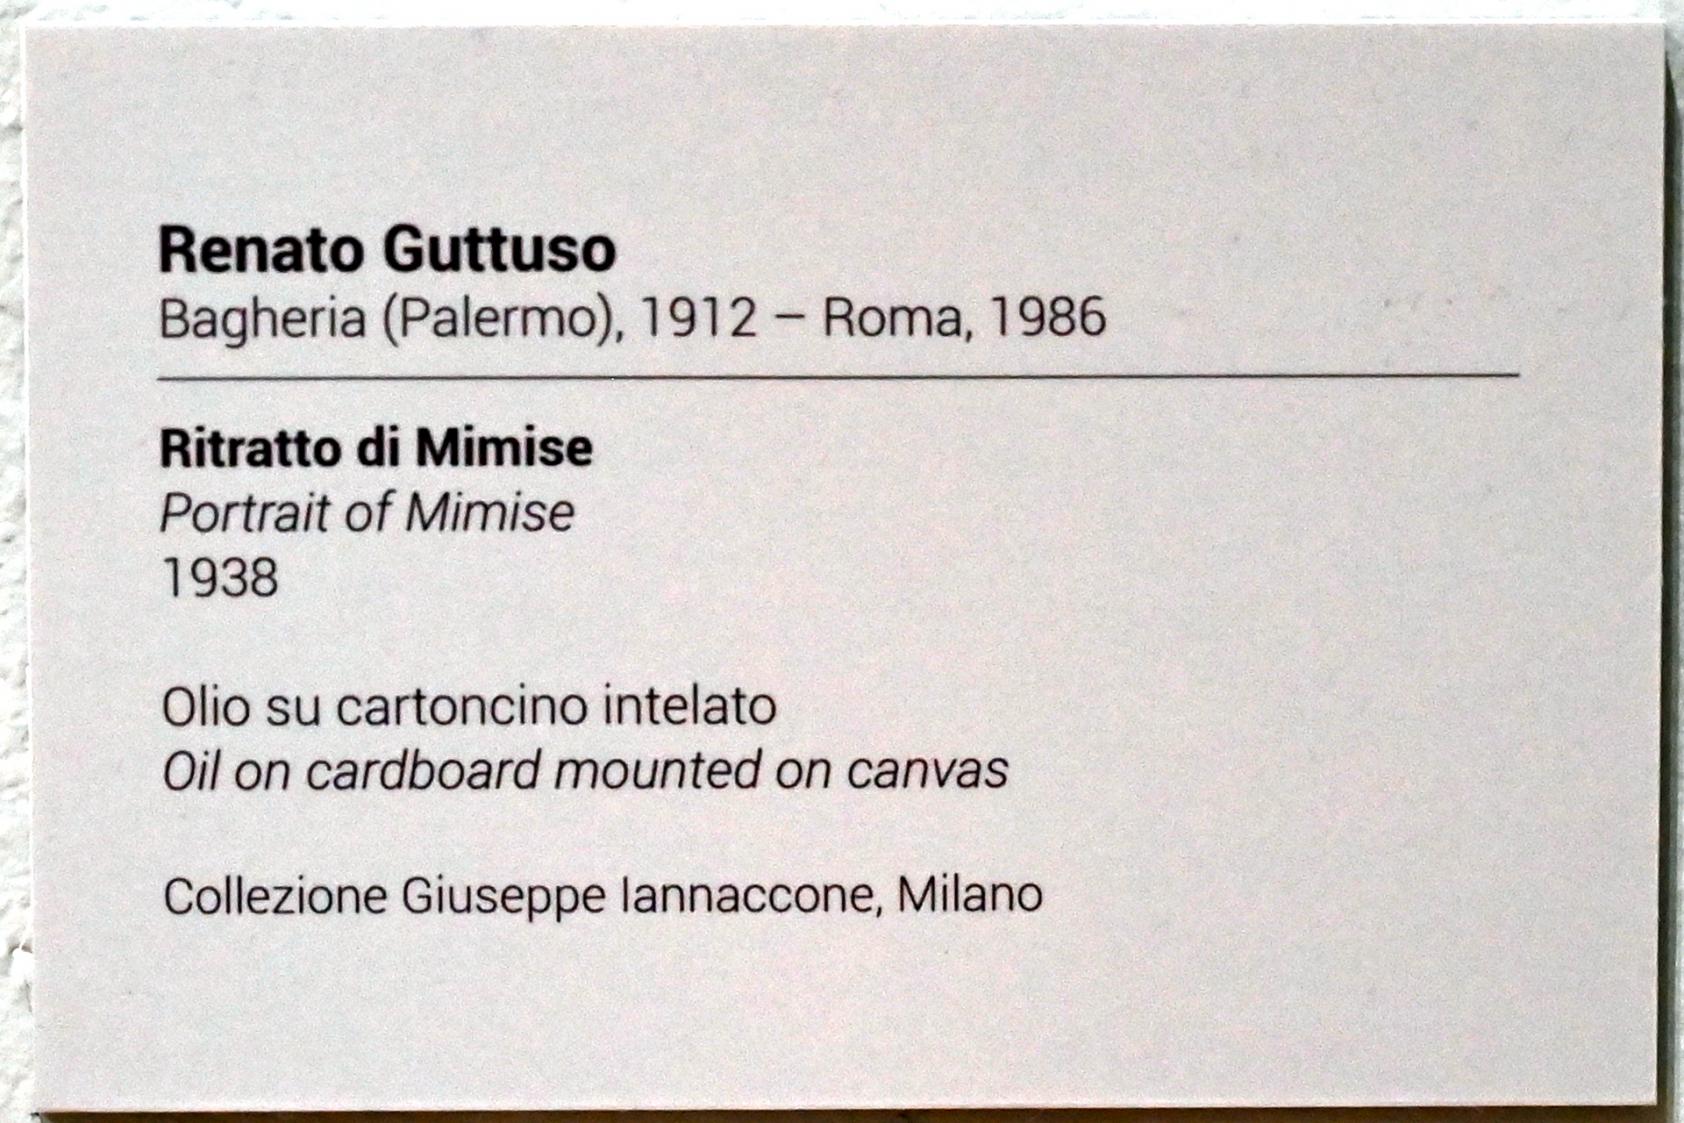 Renato Guttuso (1938–1976), Porträt Mimise, Turin, GAM Torino, Ausstellung "Eine Reise gegen den Strom" vom 05.05.-12.09.2021, Saal 4, 1938, Bild 2/2